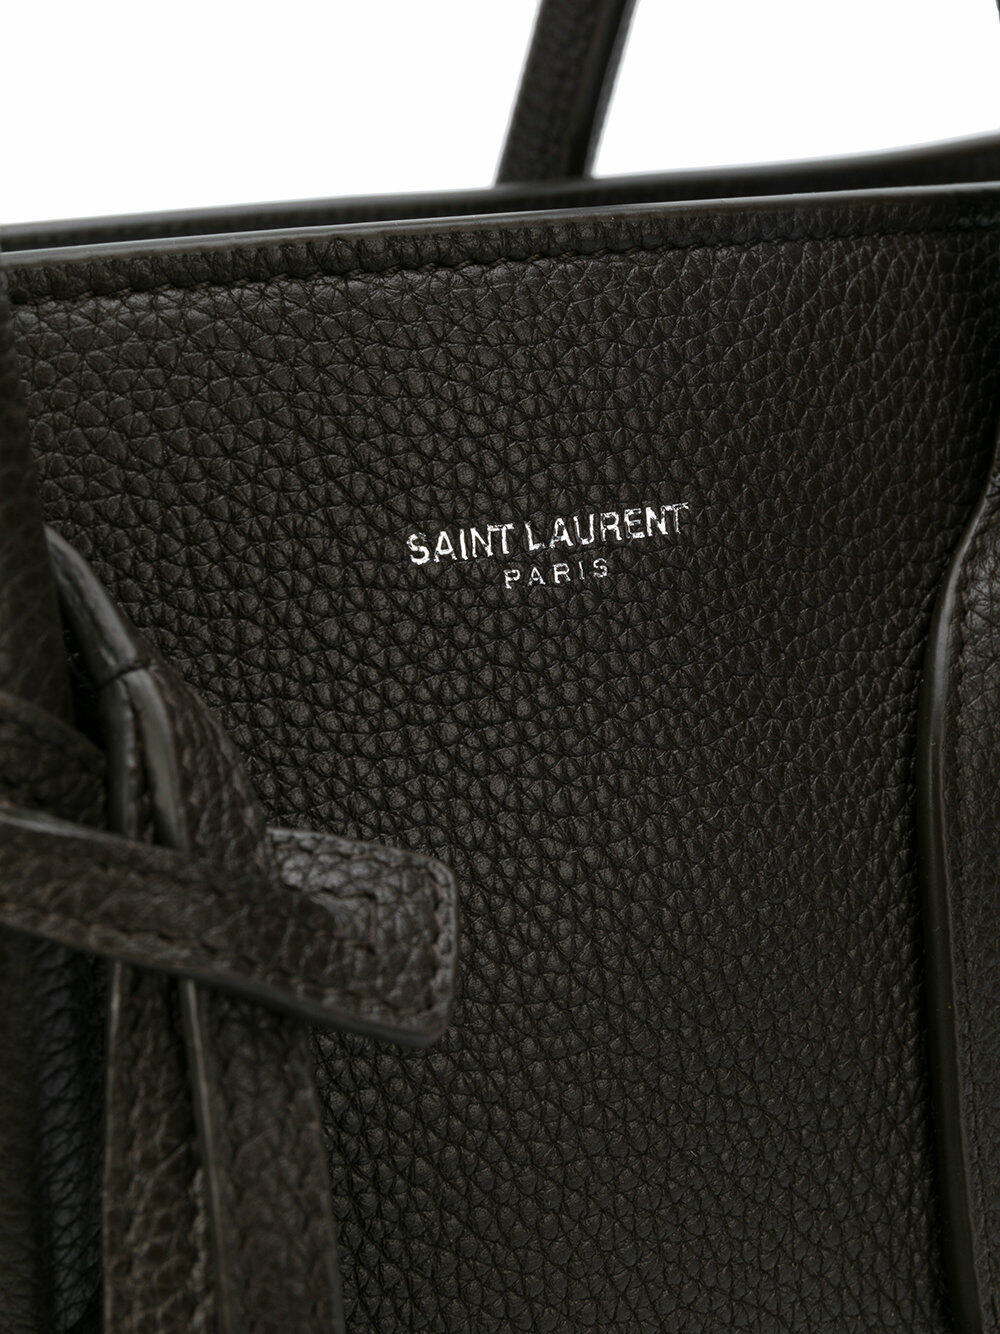 Saint Laurent Sac de Jour Nano Supple Grain Leather Satchel Bag